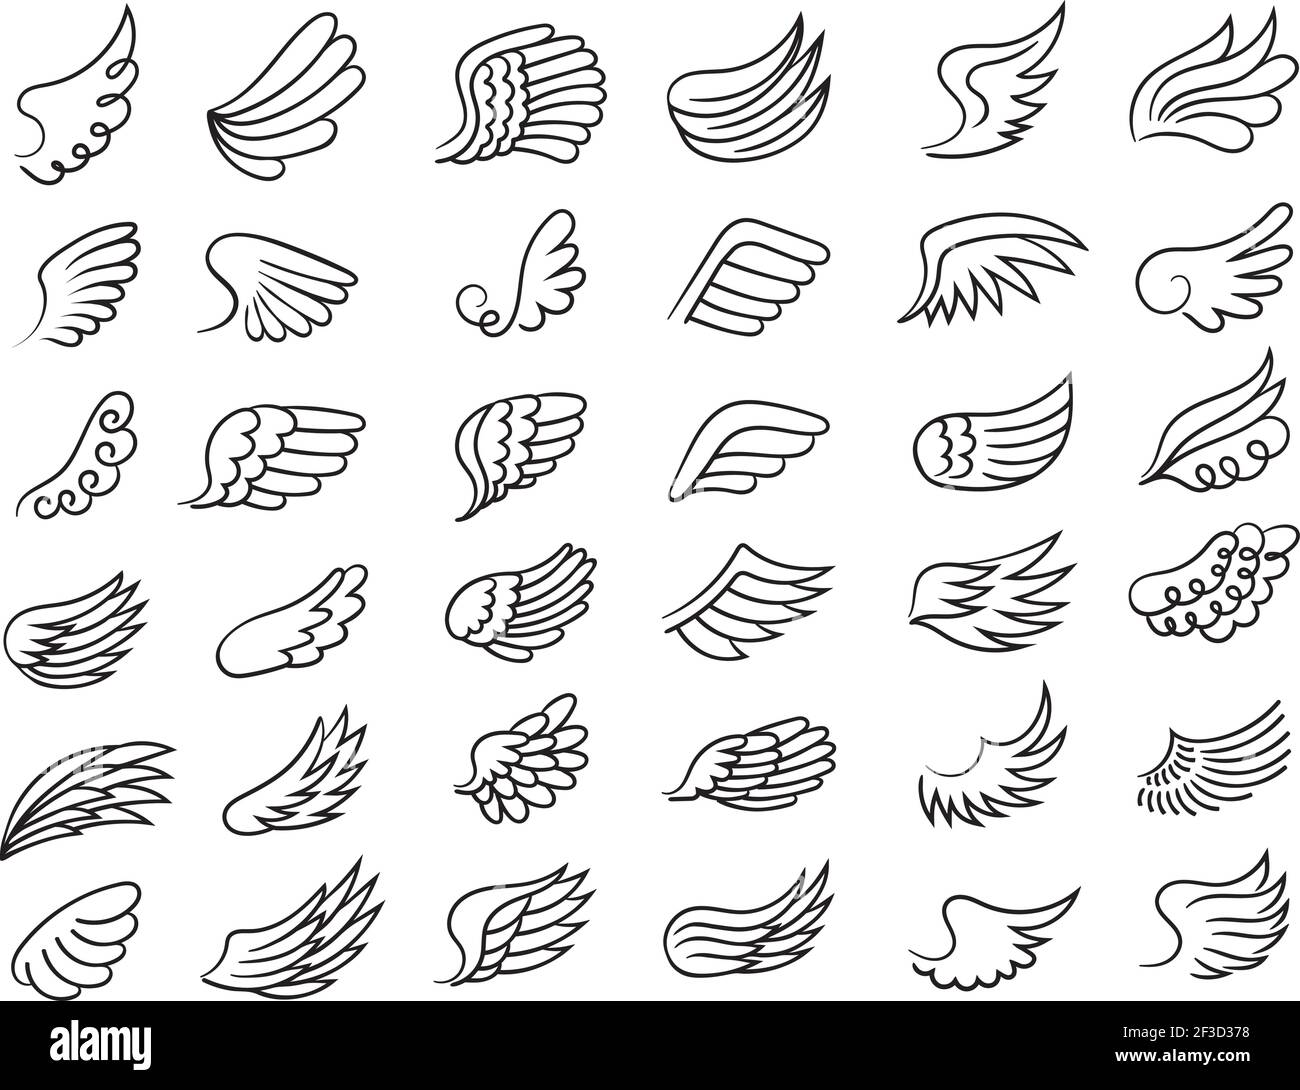 Federflügel. Freiheit Symbole fliegen Elemente ornamental Flügel der Vögel oder Engel Zeichnung Vektor-Sammlung Stock Vektor